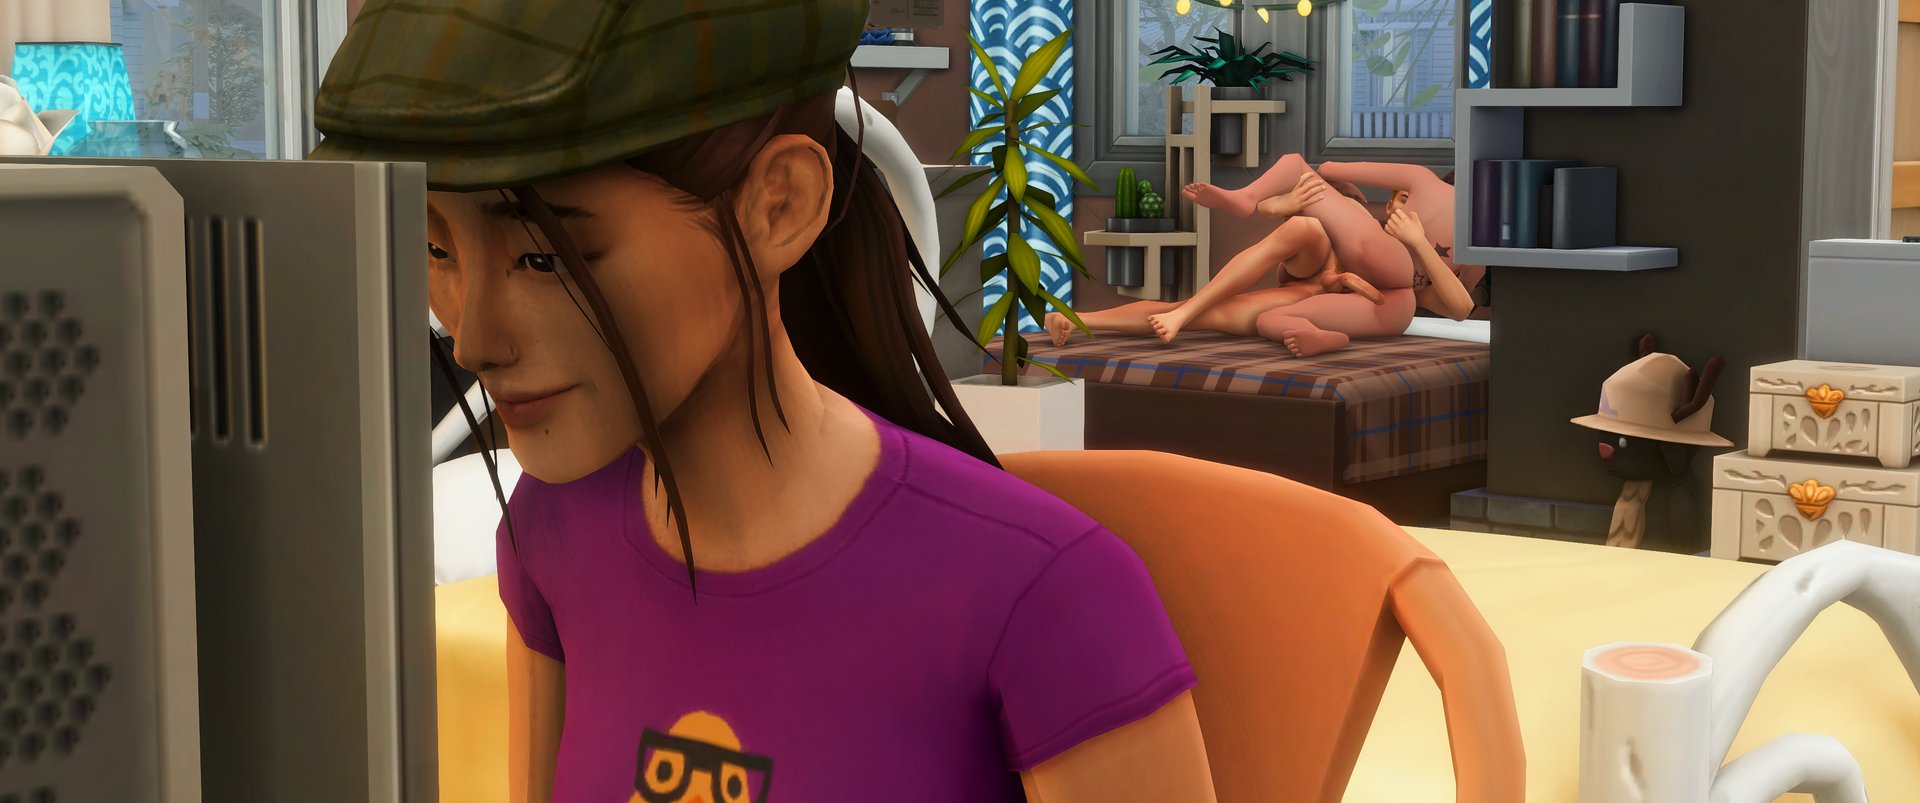 Sims 4 Screenshot 2023.01.18 - 18.25.37.28.png